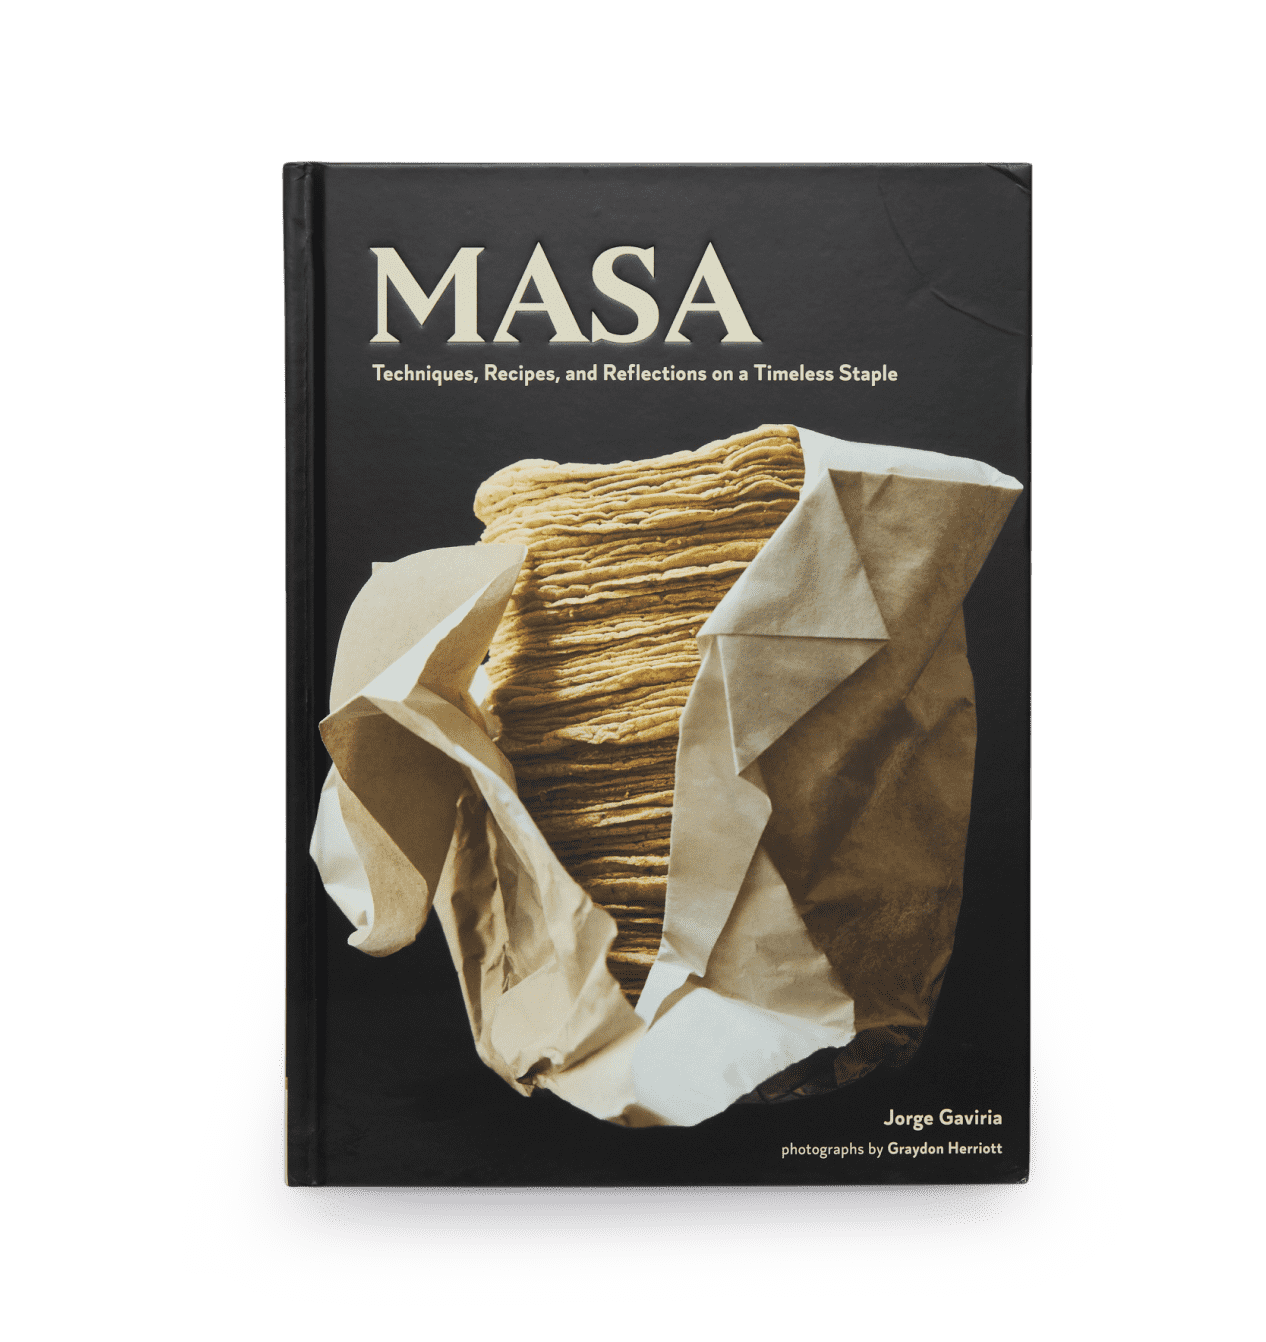 MASA Recetas Libro de Jorge Gaviria | Libro de Cocina Mexicana | #1 de #11